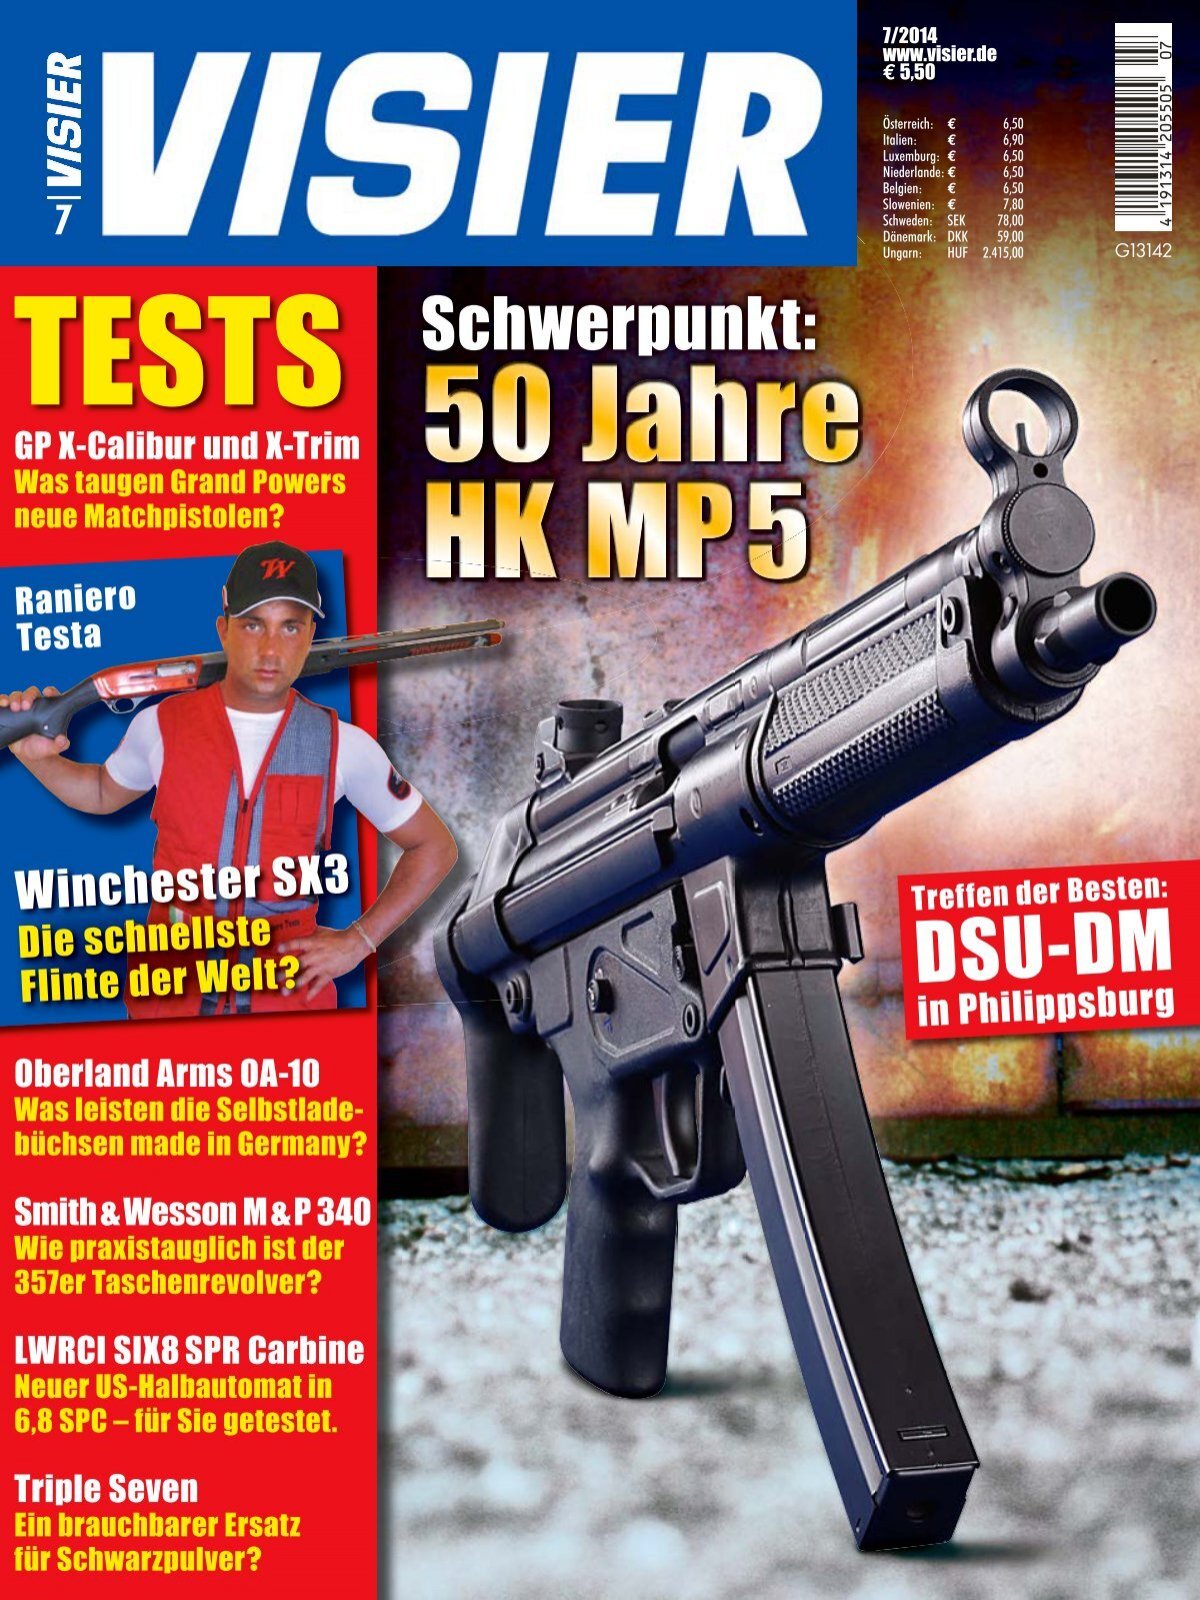 VISIER: Das internationale Waffen-Magazin Schwerpunkt: 50 Jahre HK